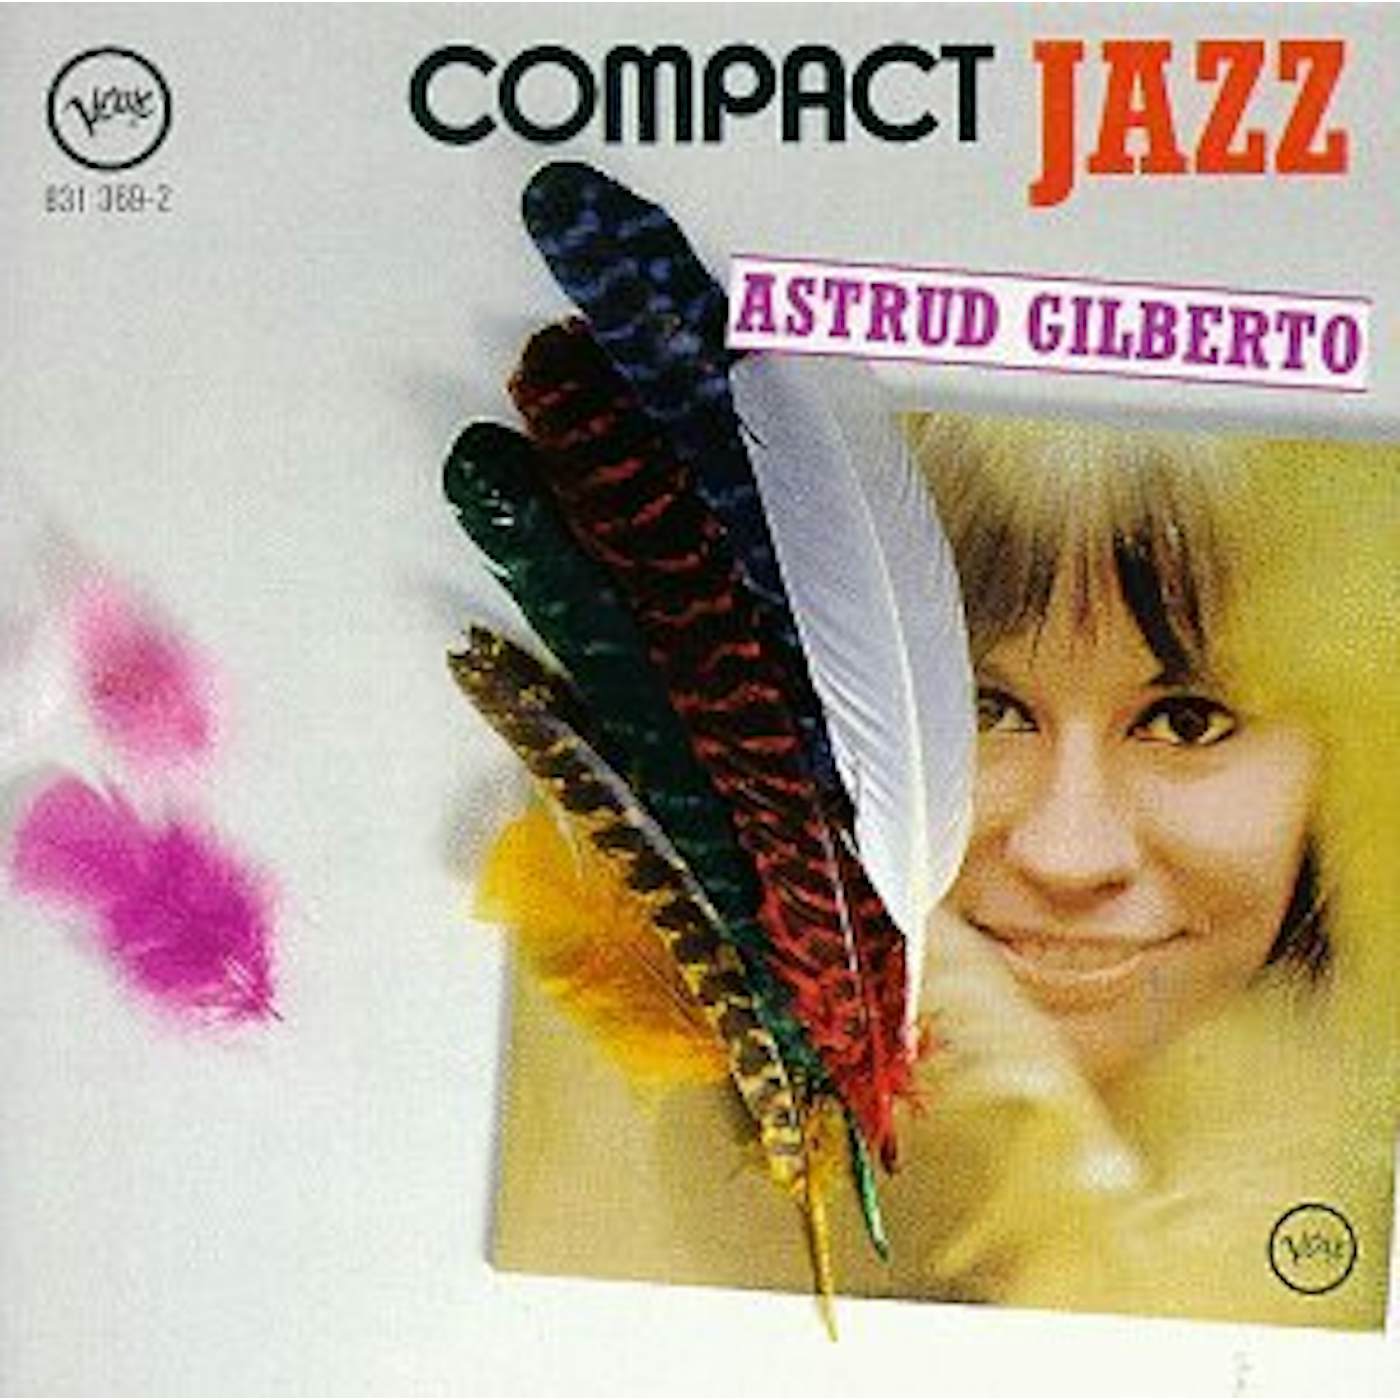 Astrud Gilberto COMPACT JAZZ CD